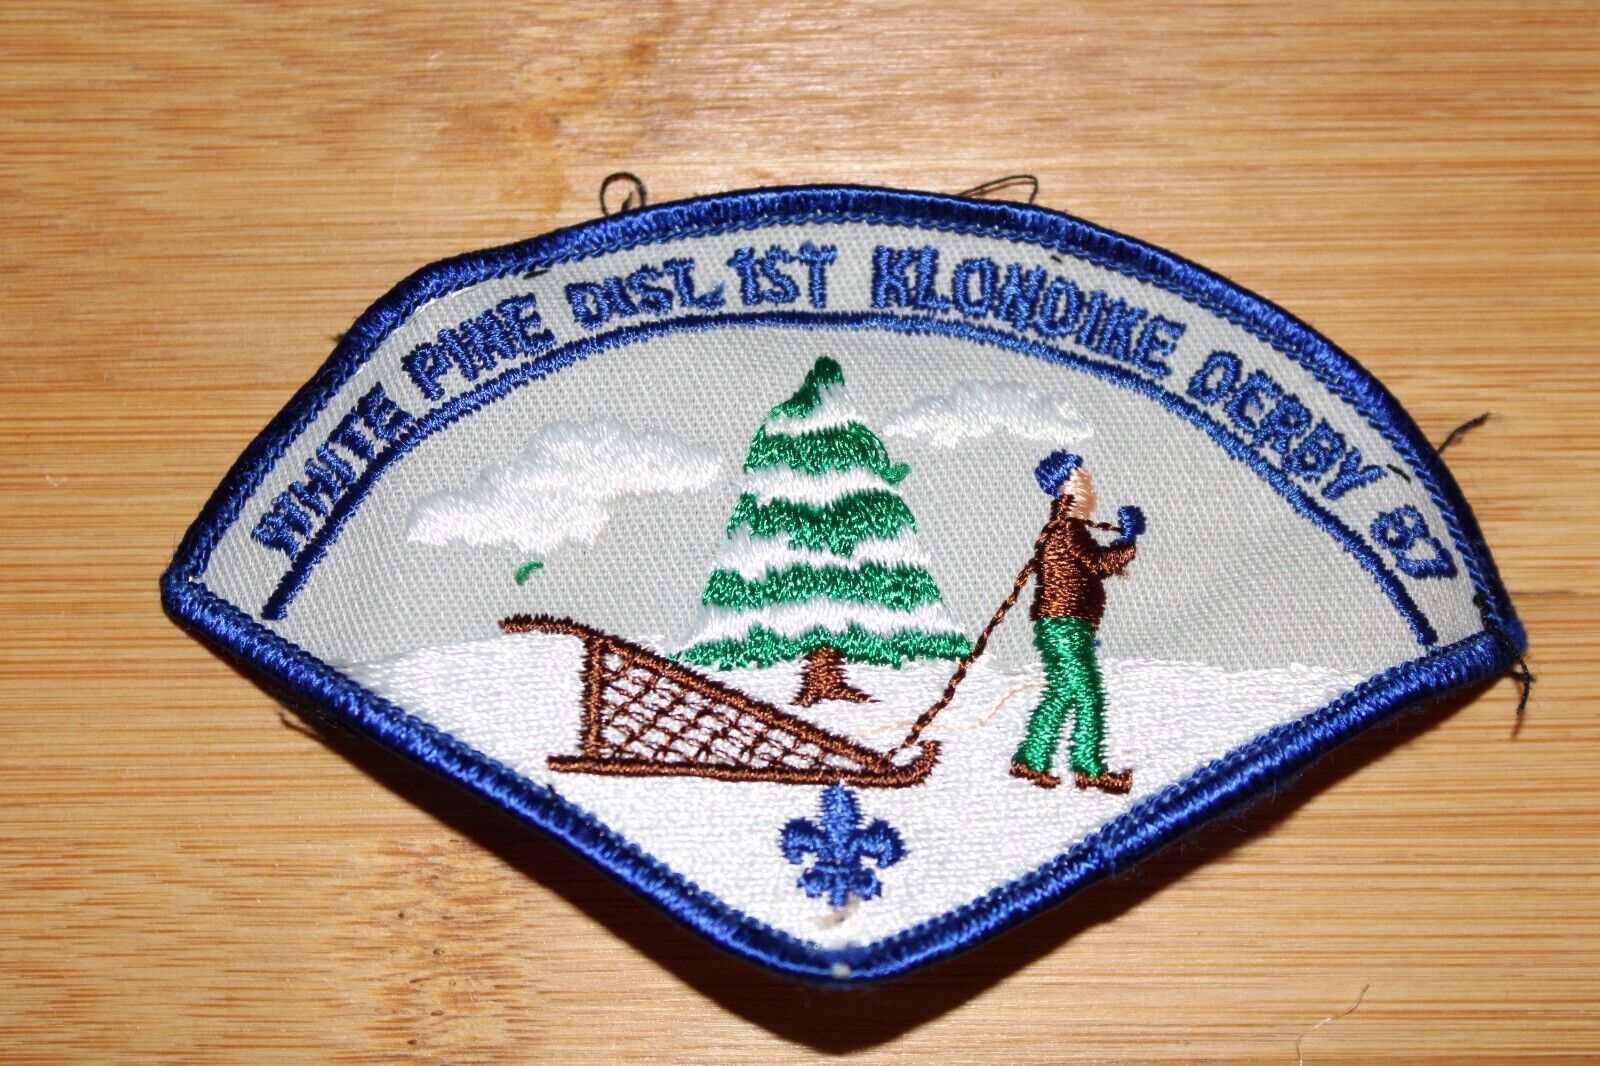 White Pine Klondike Derby 1987 Boy Scouts of America BSA Patch